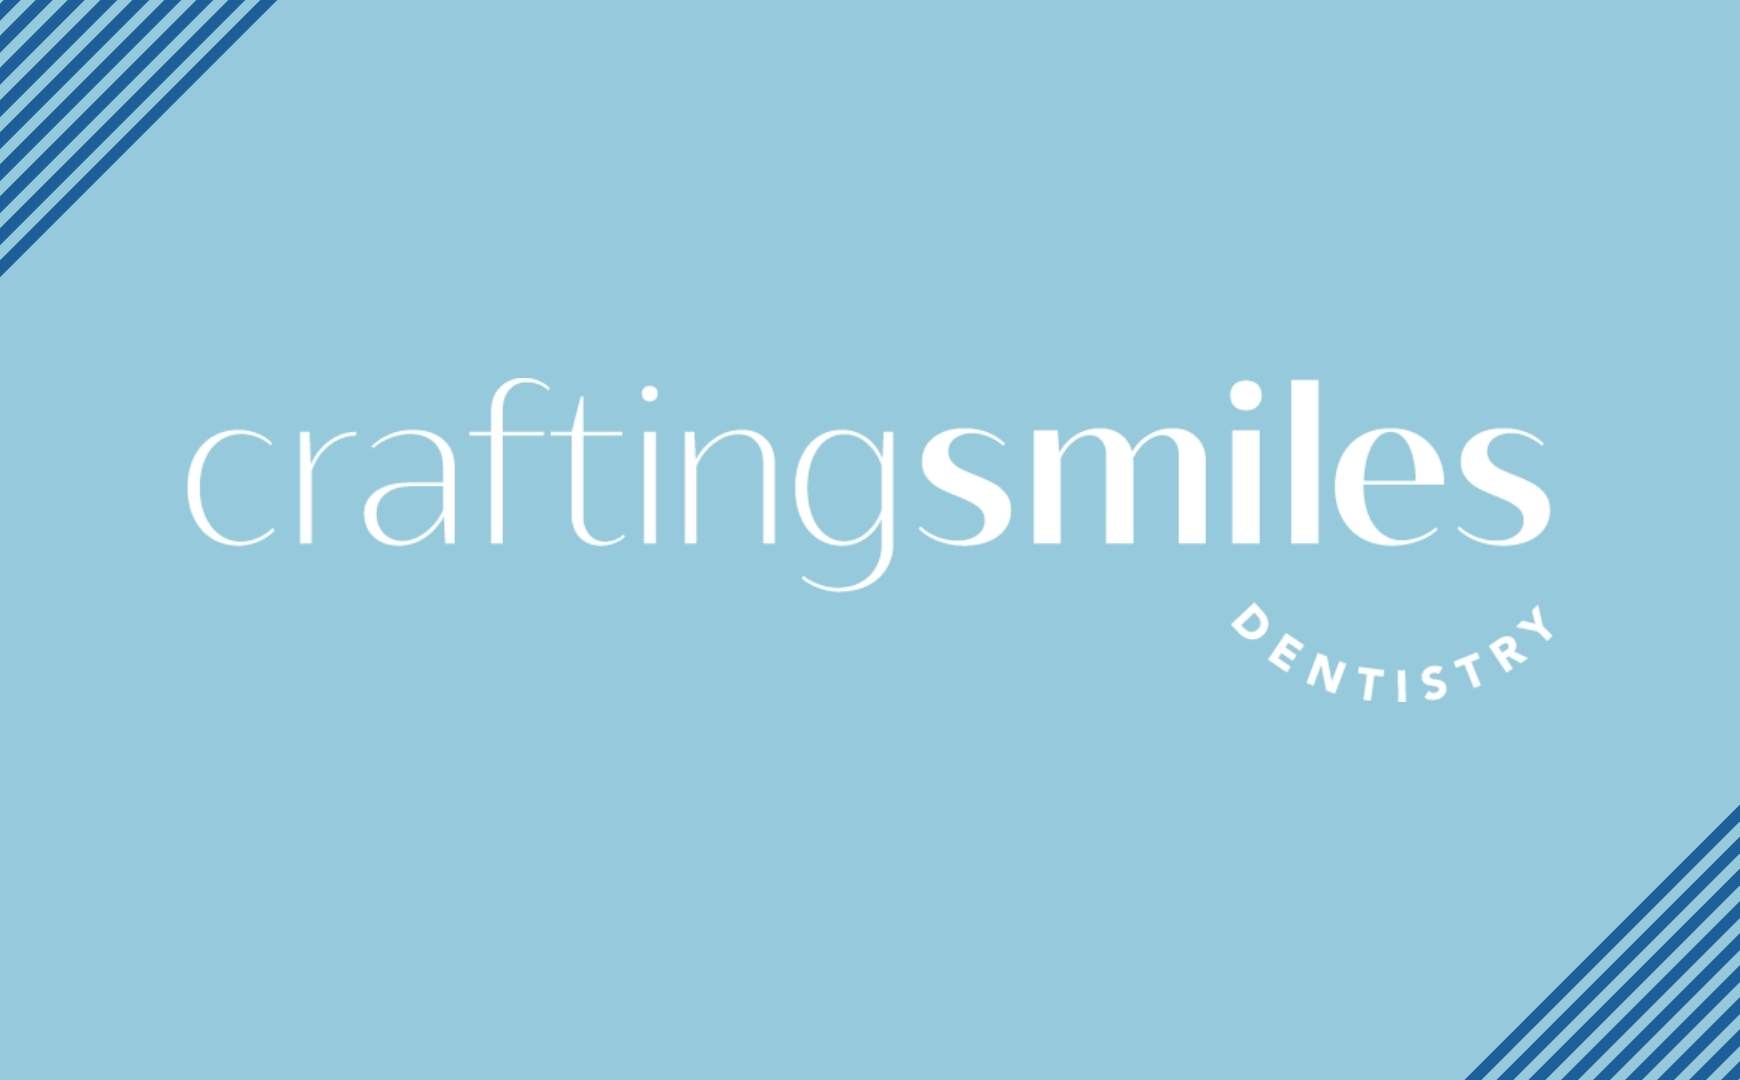 Crafting Smiles Logo